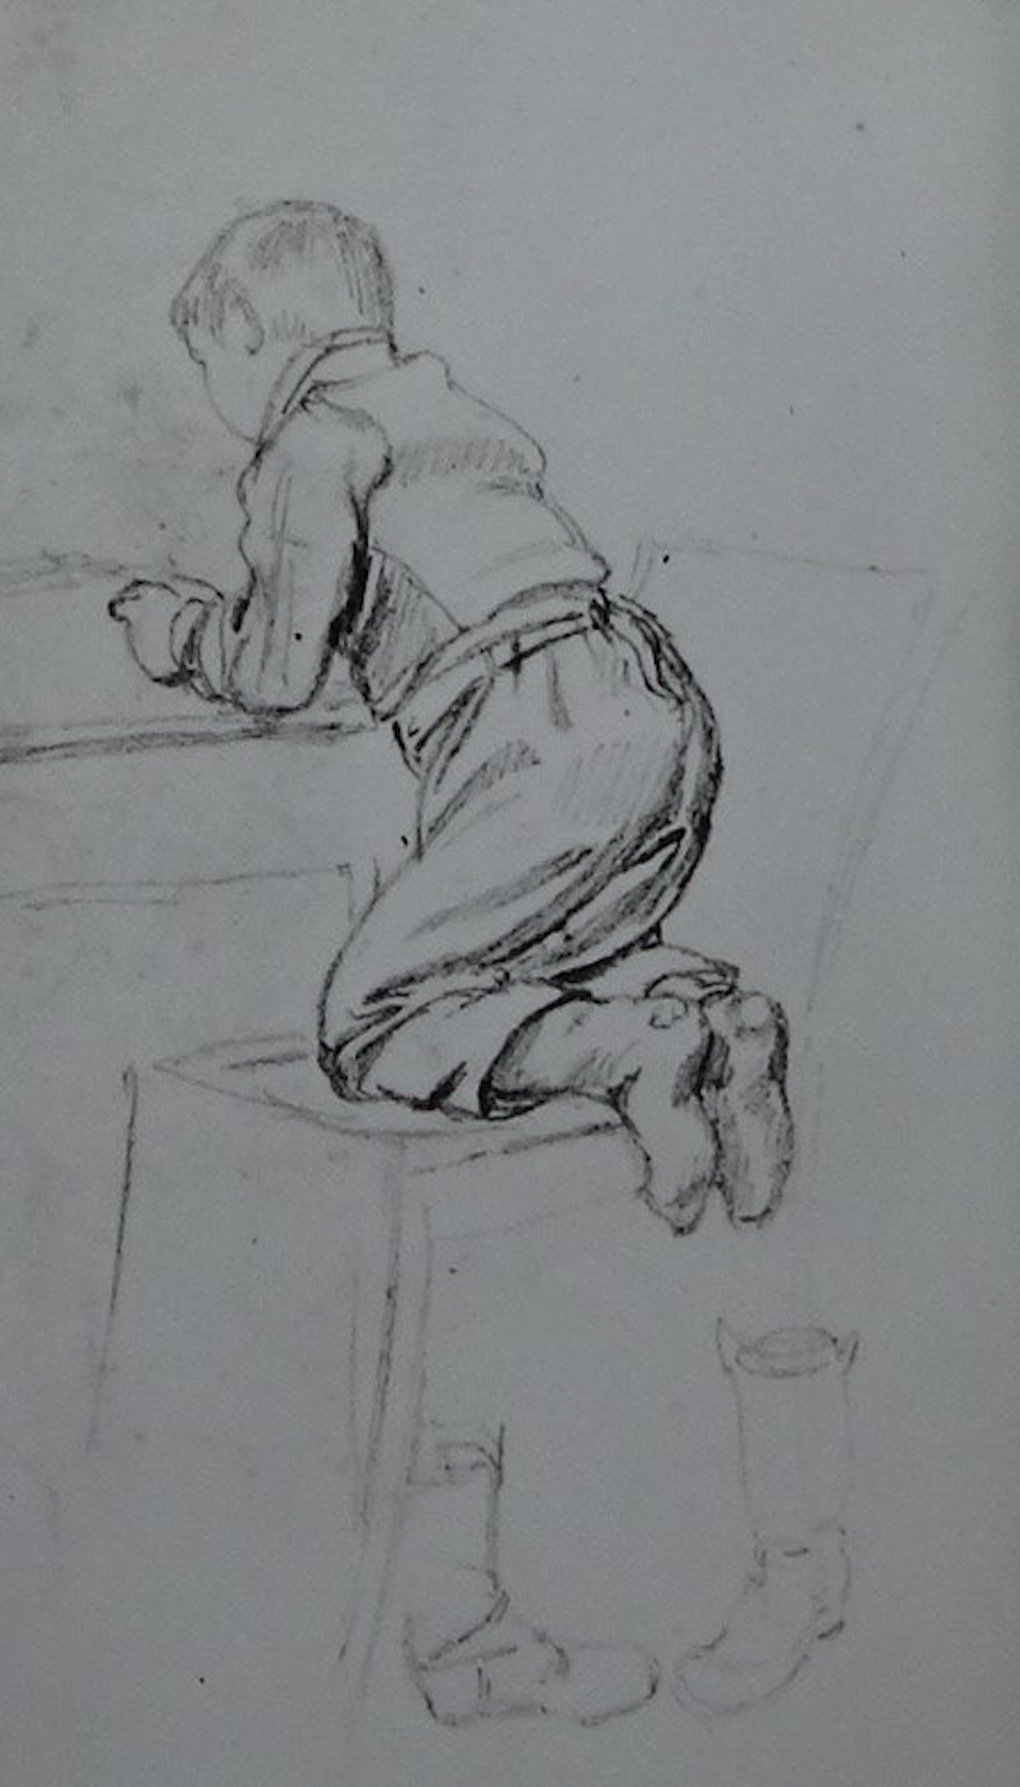 Ludwig Most, Chłopiec klęczący tyłem na krześle, nie datowany, ołówek na papierze welinowym, rysunek w szkicowniku nr 2, Muzeum Narodowe w Szczecinie